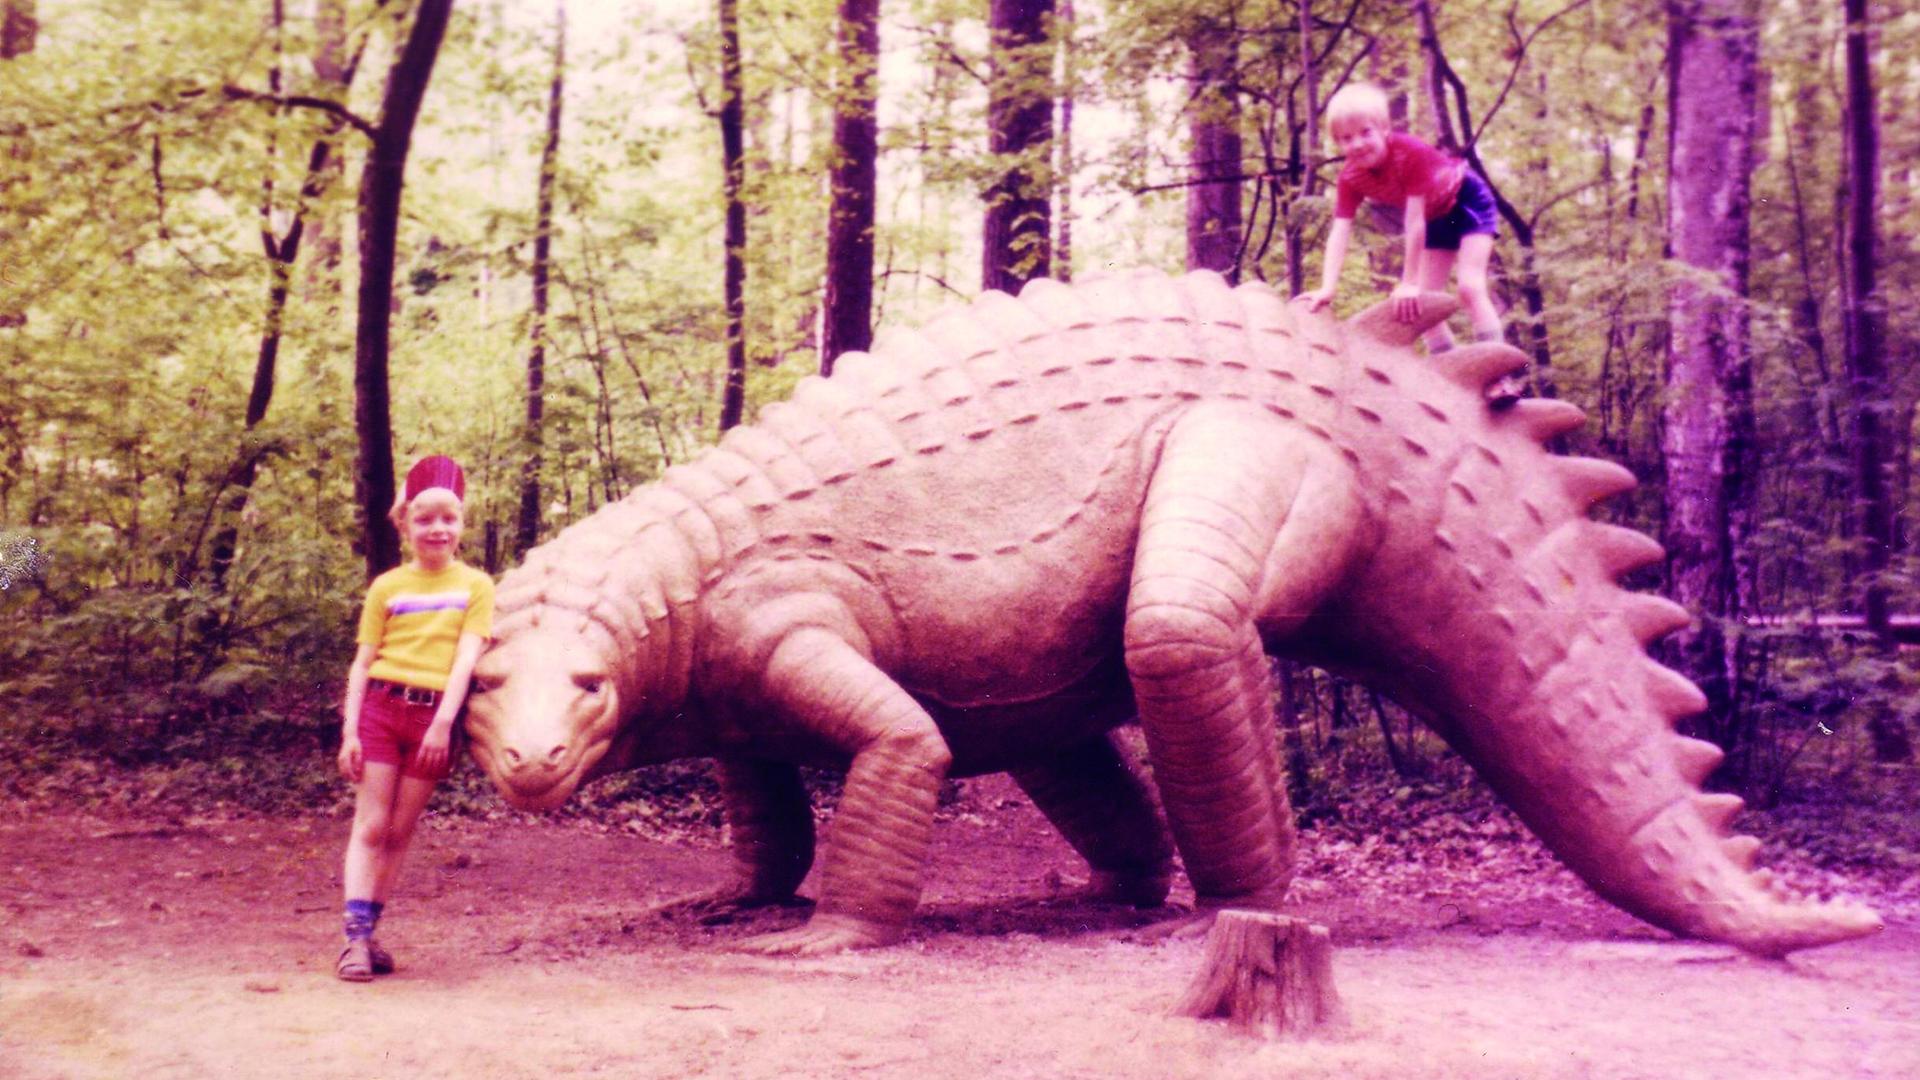 Zwei Kinder posieren neben dem lebensgroßen Modell eines Dinosauriers in einem Freizeitpark.